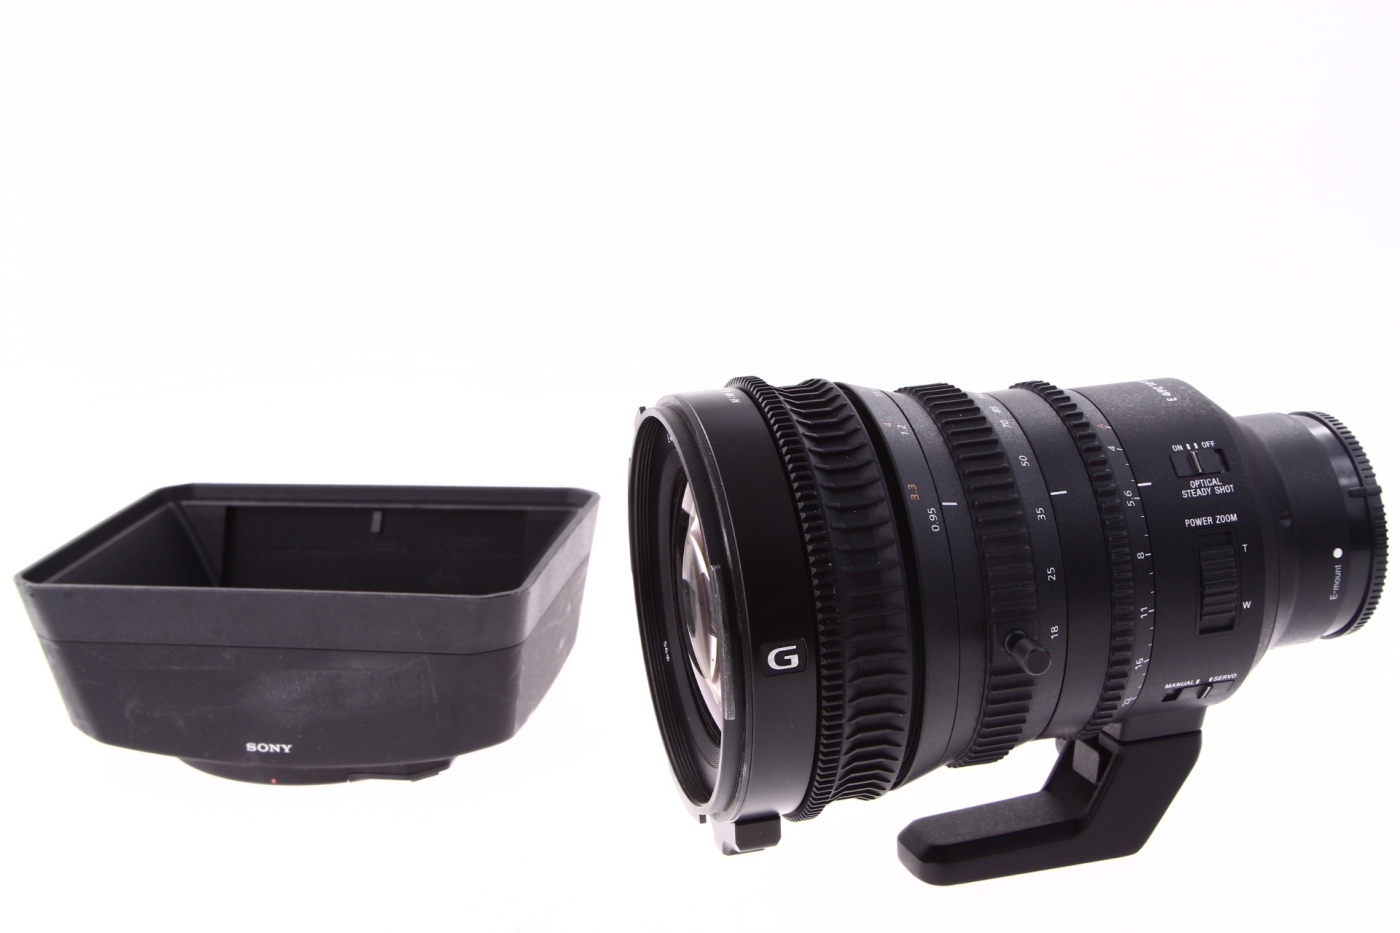 Sony objektiv E PZ 18-110mm F4 G OSS (SELP18110G) za 56517 Kč - Allegro